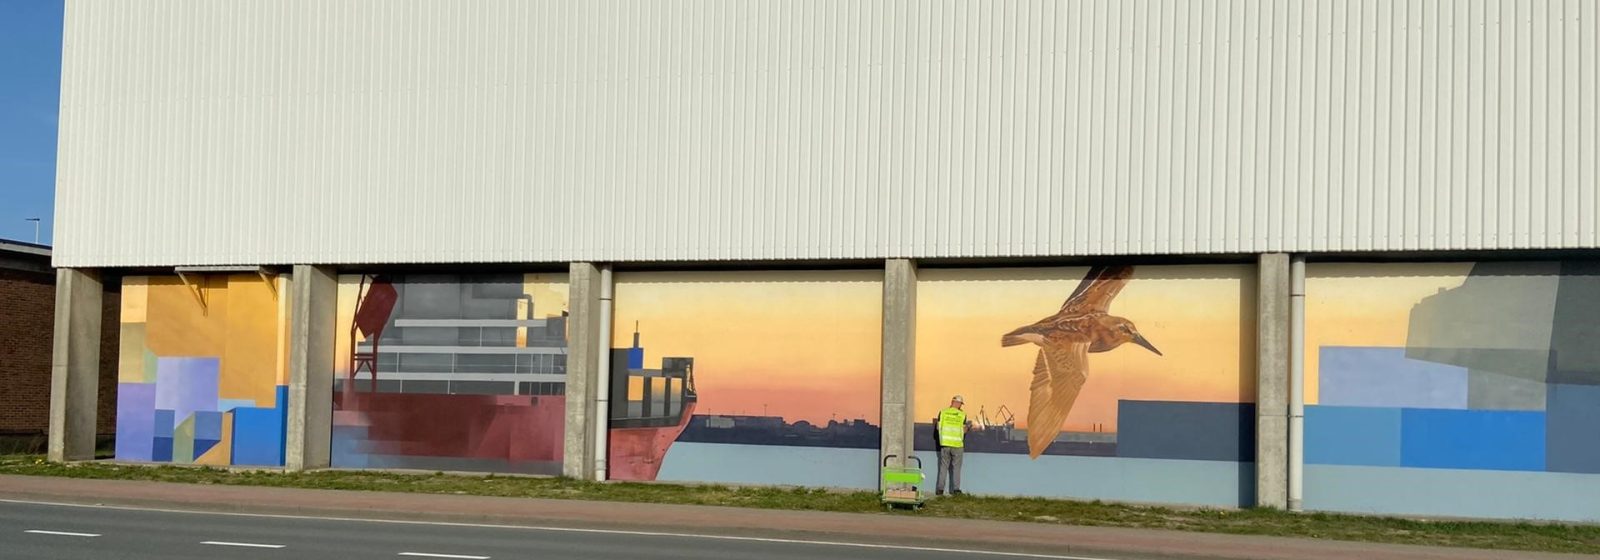 Een deel van de muurschildering bij Euroports in de Antwerpse haven